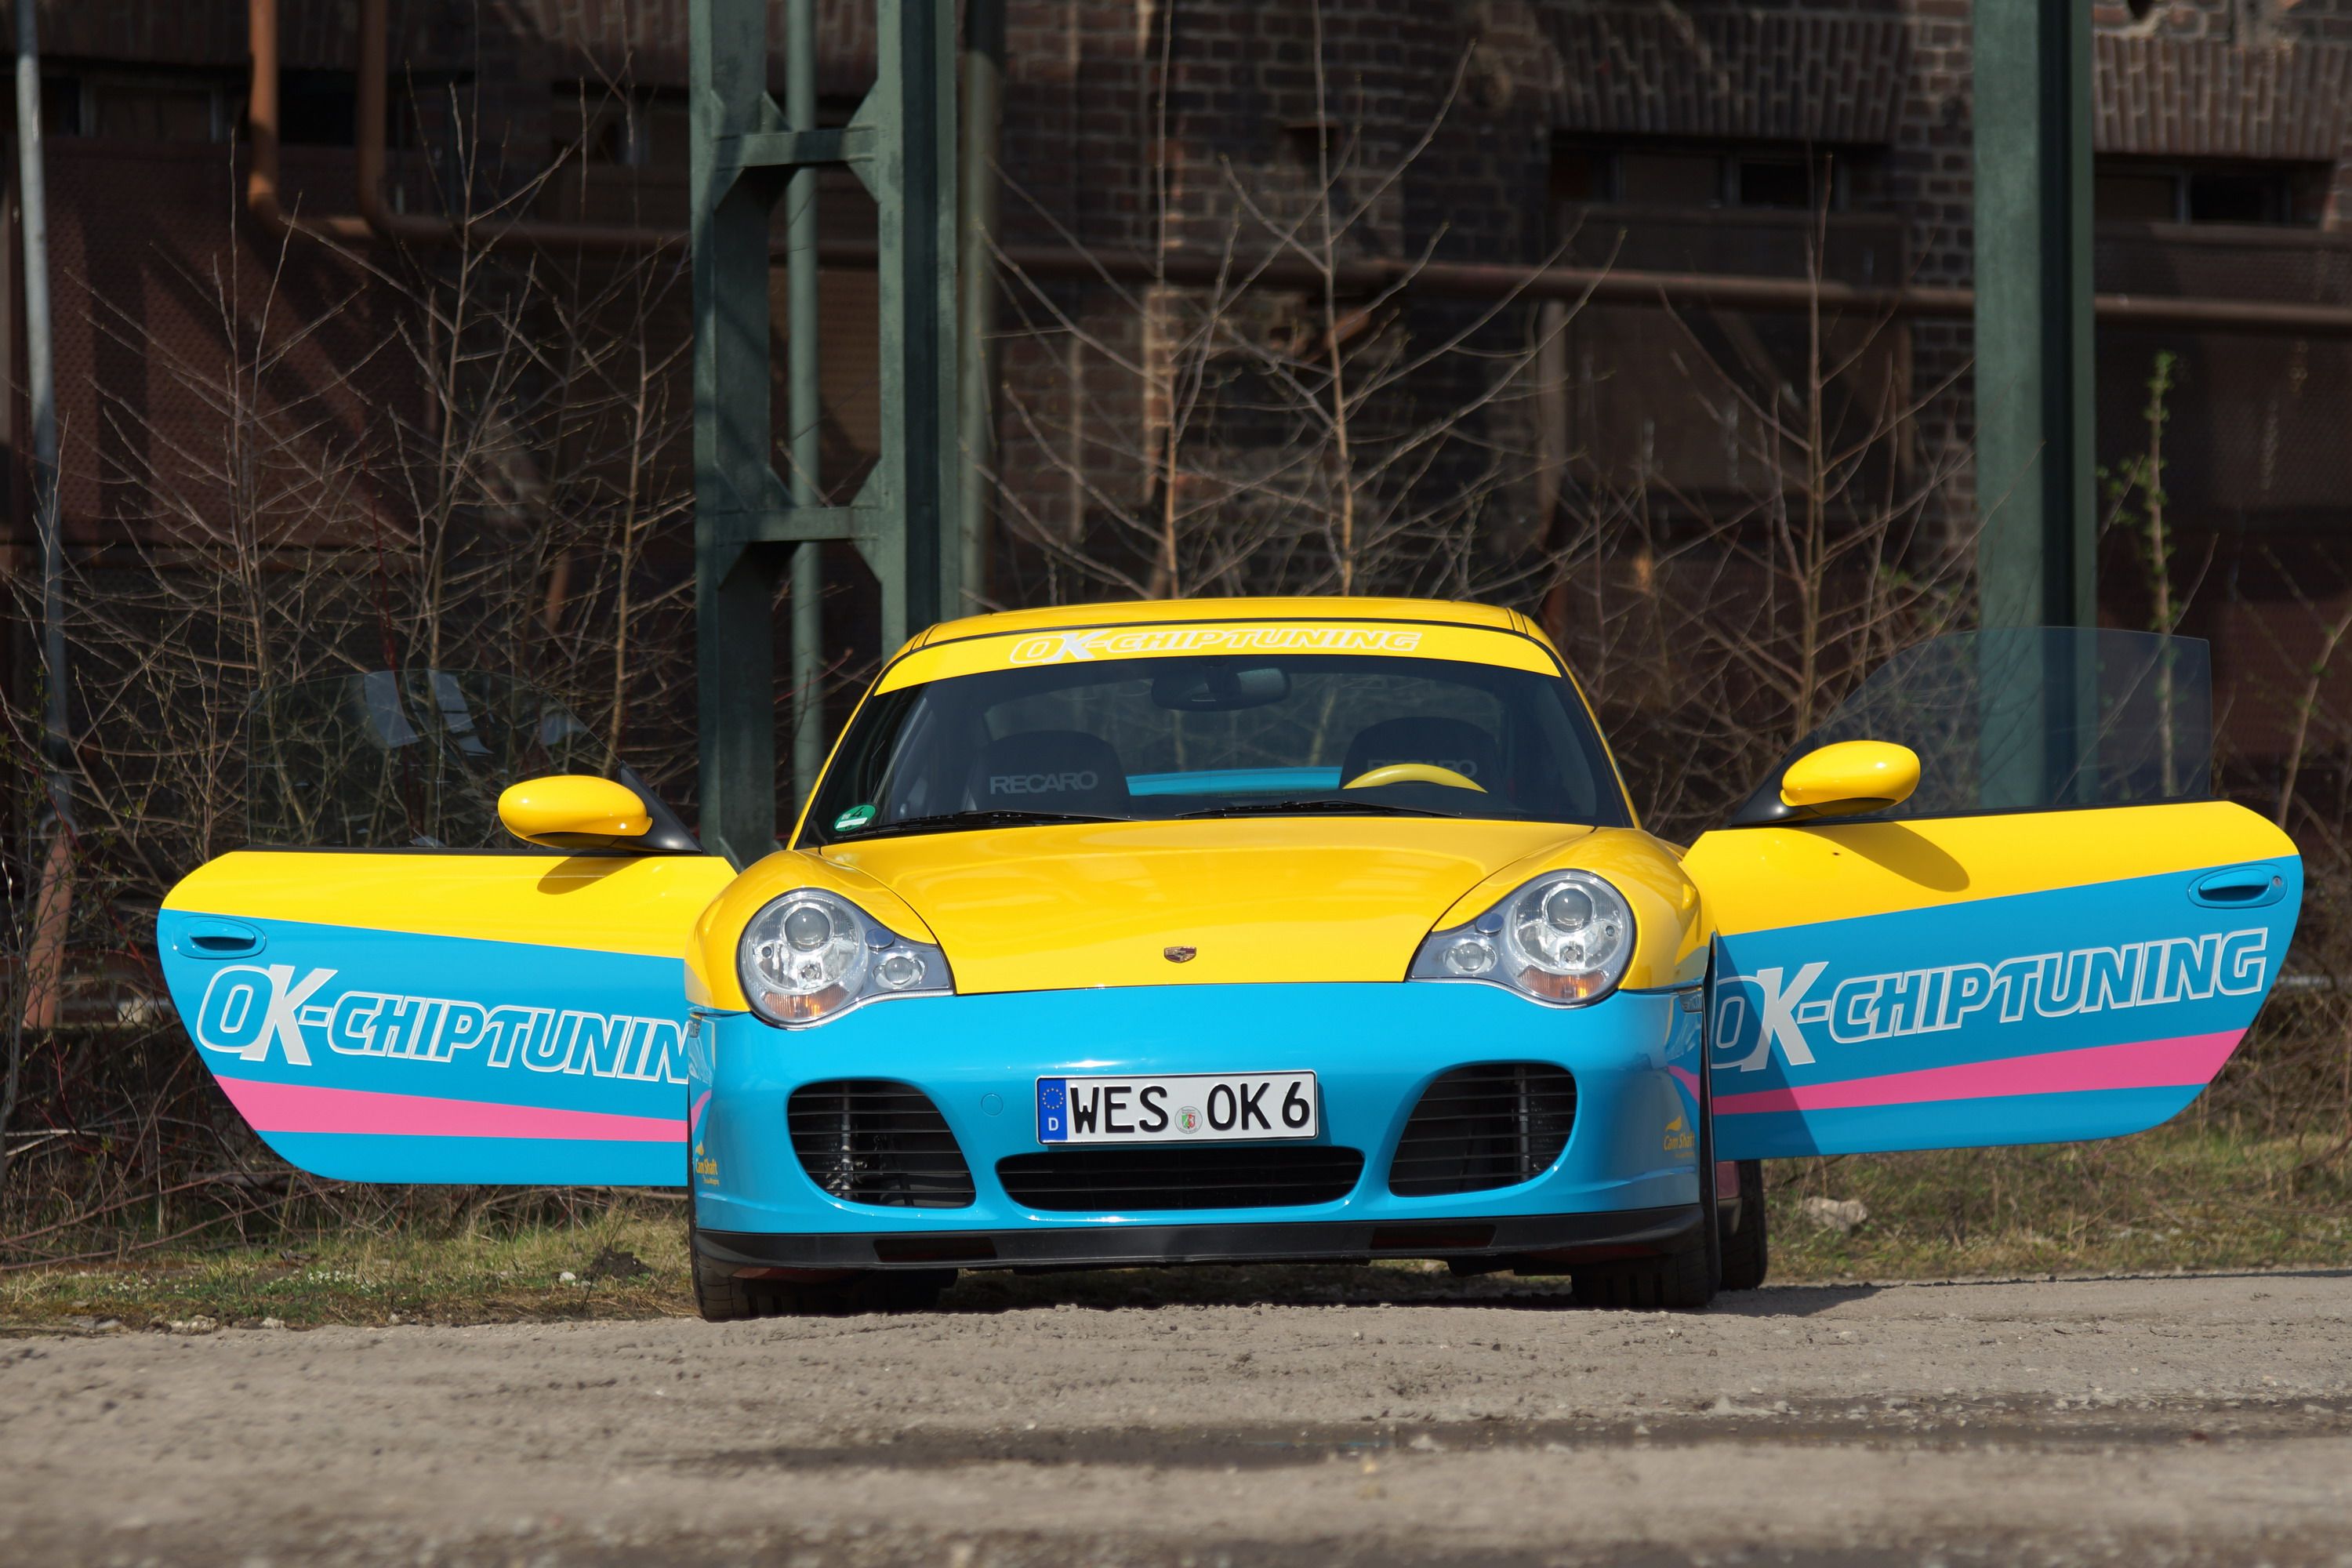 2002 Manta Porsche by OK-Chiptuning